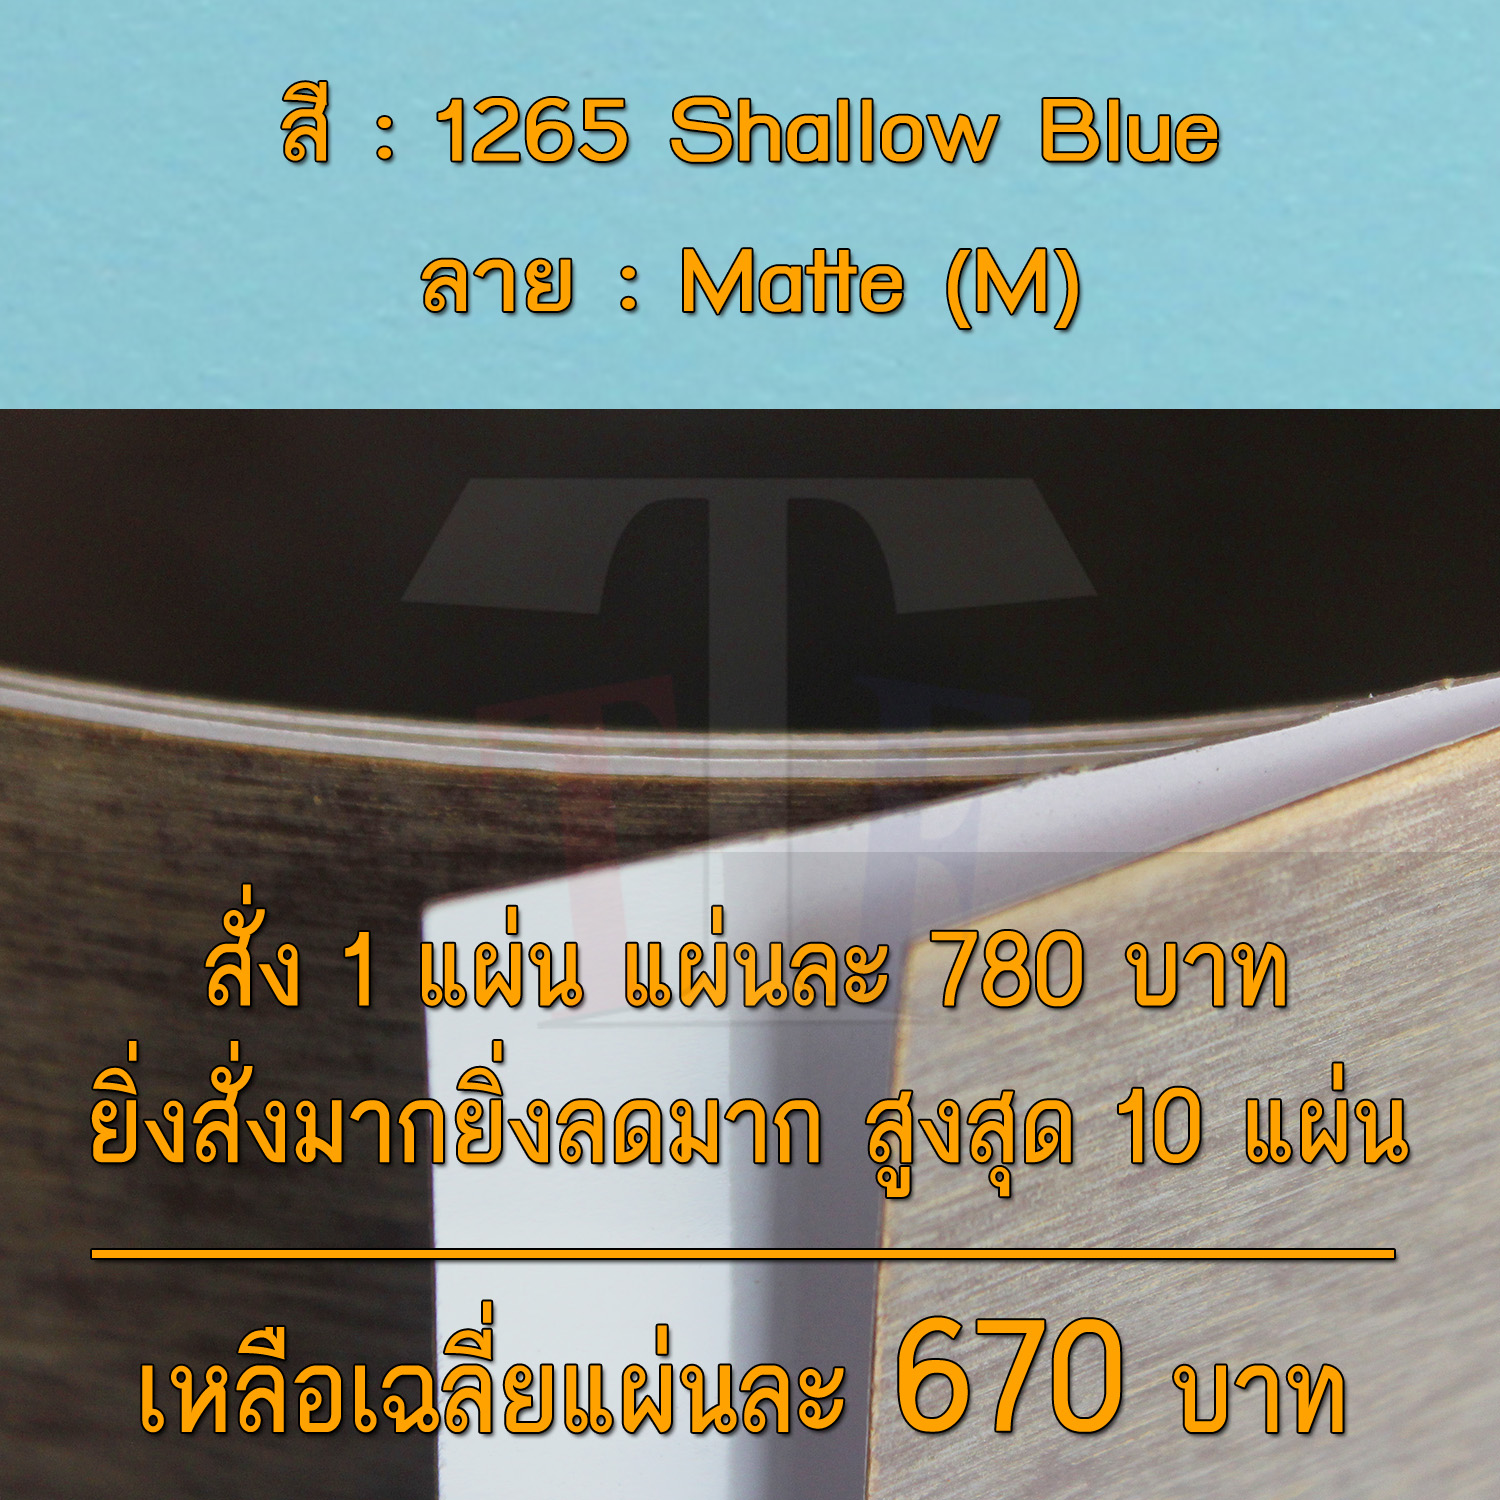 แผ่นโฟเมก้า แผ่นลามิเนต ยี่ห้อ TD Board สีฟ้า รหัส 1265 Shallow Blue พื้นผิวลาย Matte (M) ขนาด 1220 x 2440 มม. หนา 0.70 มม. ใช้สำหรับงานตกแต่งภายใน งานปิดผิวเฟอร์นิเจอร์ ผนัง และอื่นๆ เพื่อเพิ่มความสวยงาม formica laminate 1265M